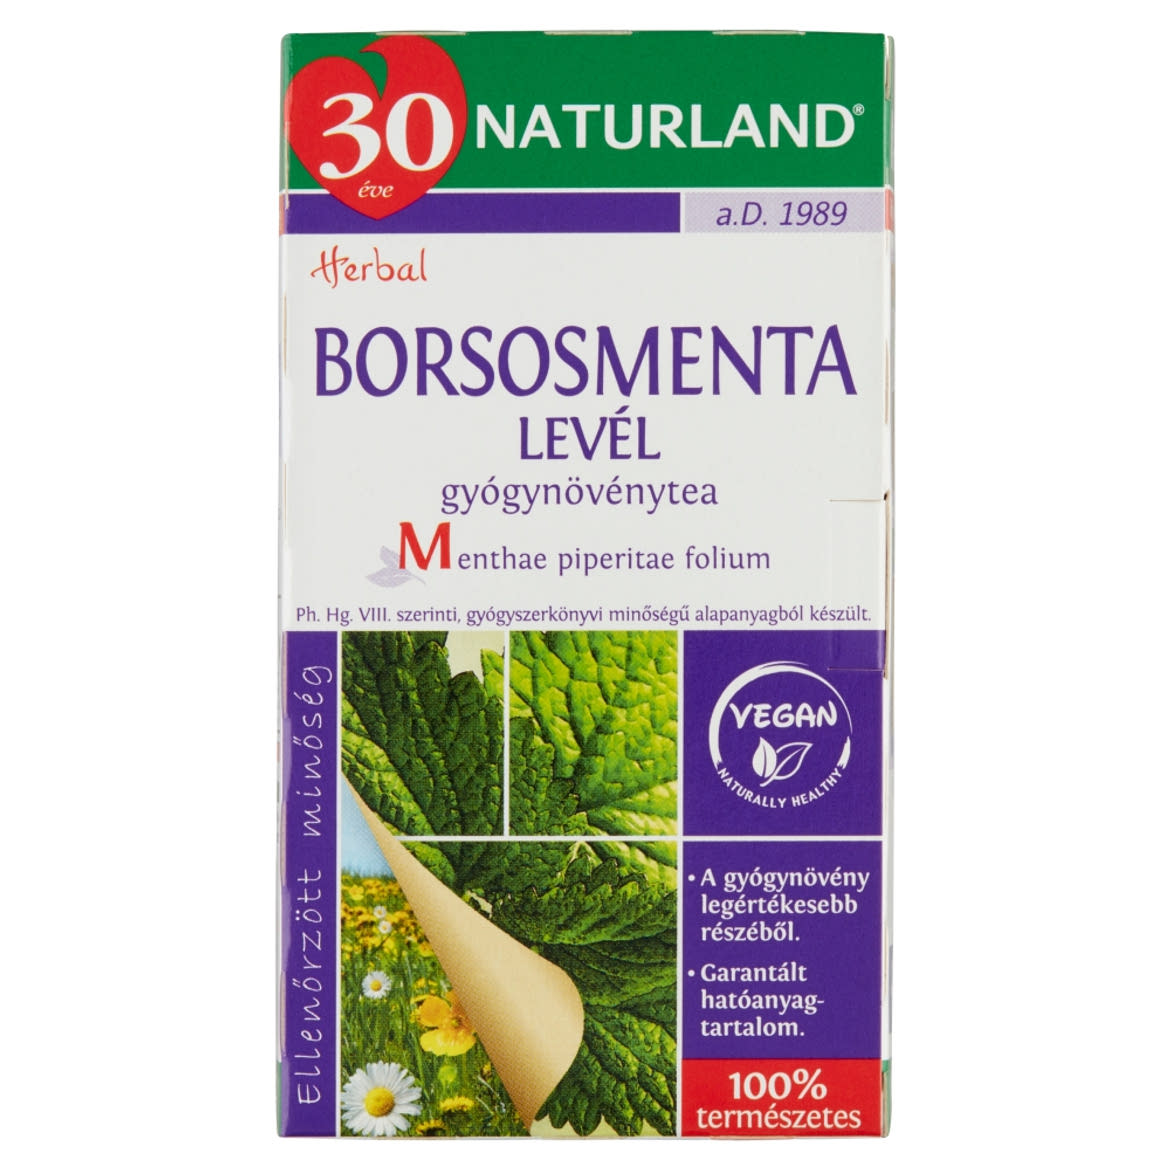 Naturland Herbal borsosmentalevél gyógynövénytea